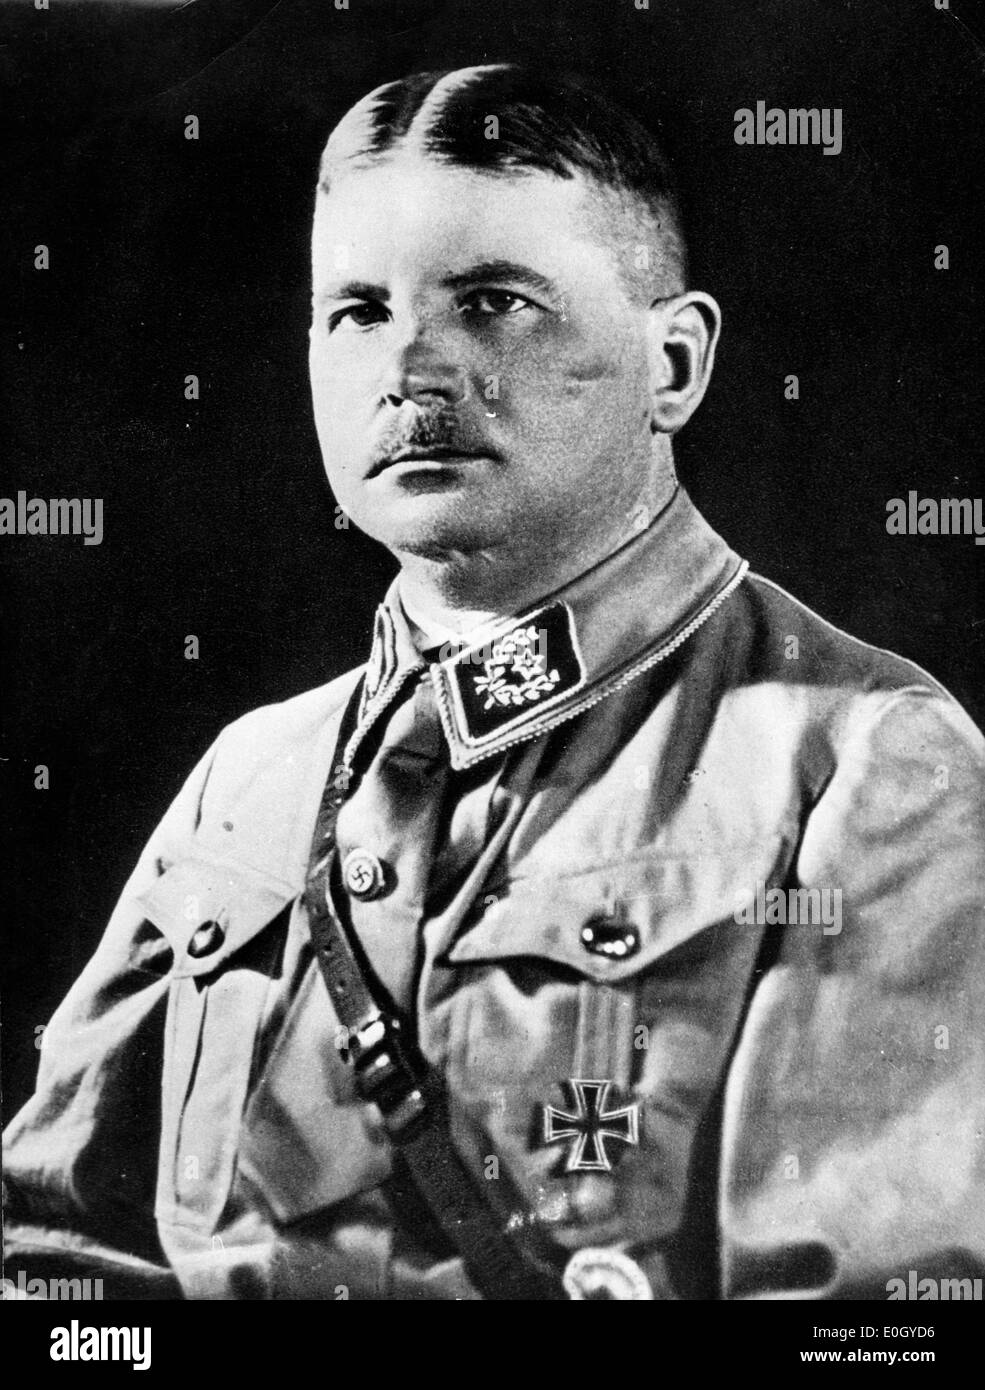 01 janvier 1940 - Allemagne - dossier Photo : Vers les années 1940, l'emplacement exact inconnu. Portrait du leader Nazi ERNST ROEHM. Banque D'Images